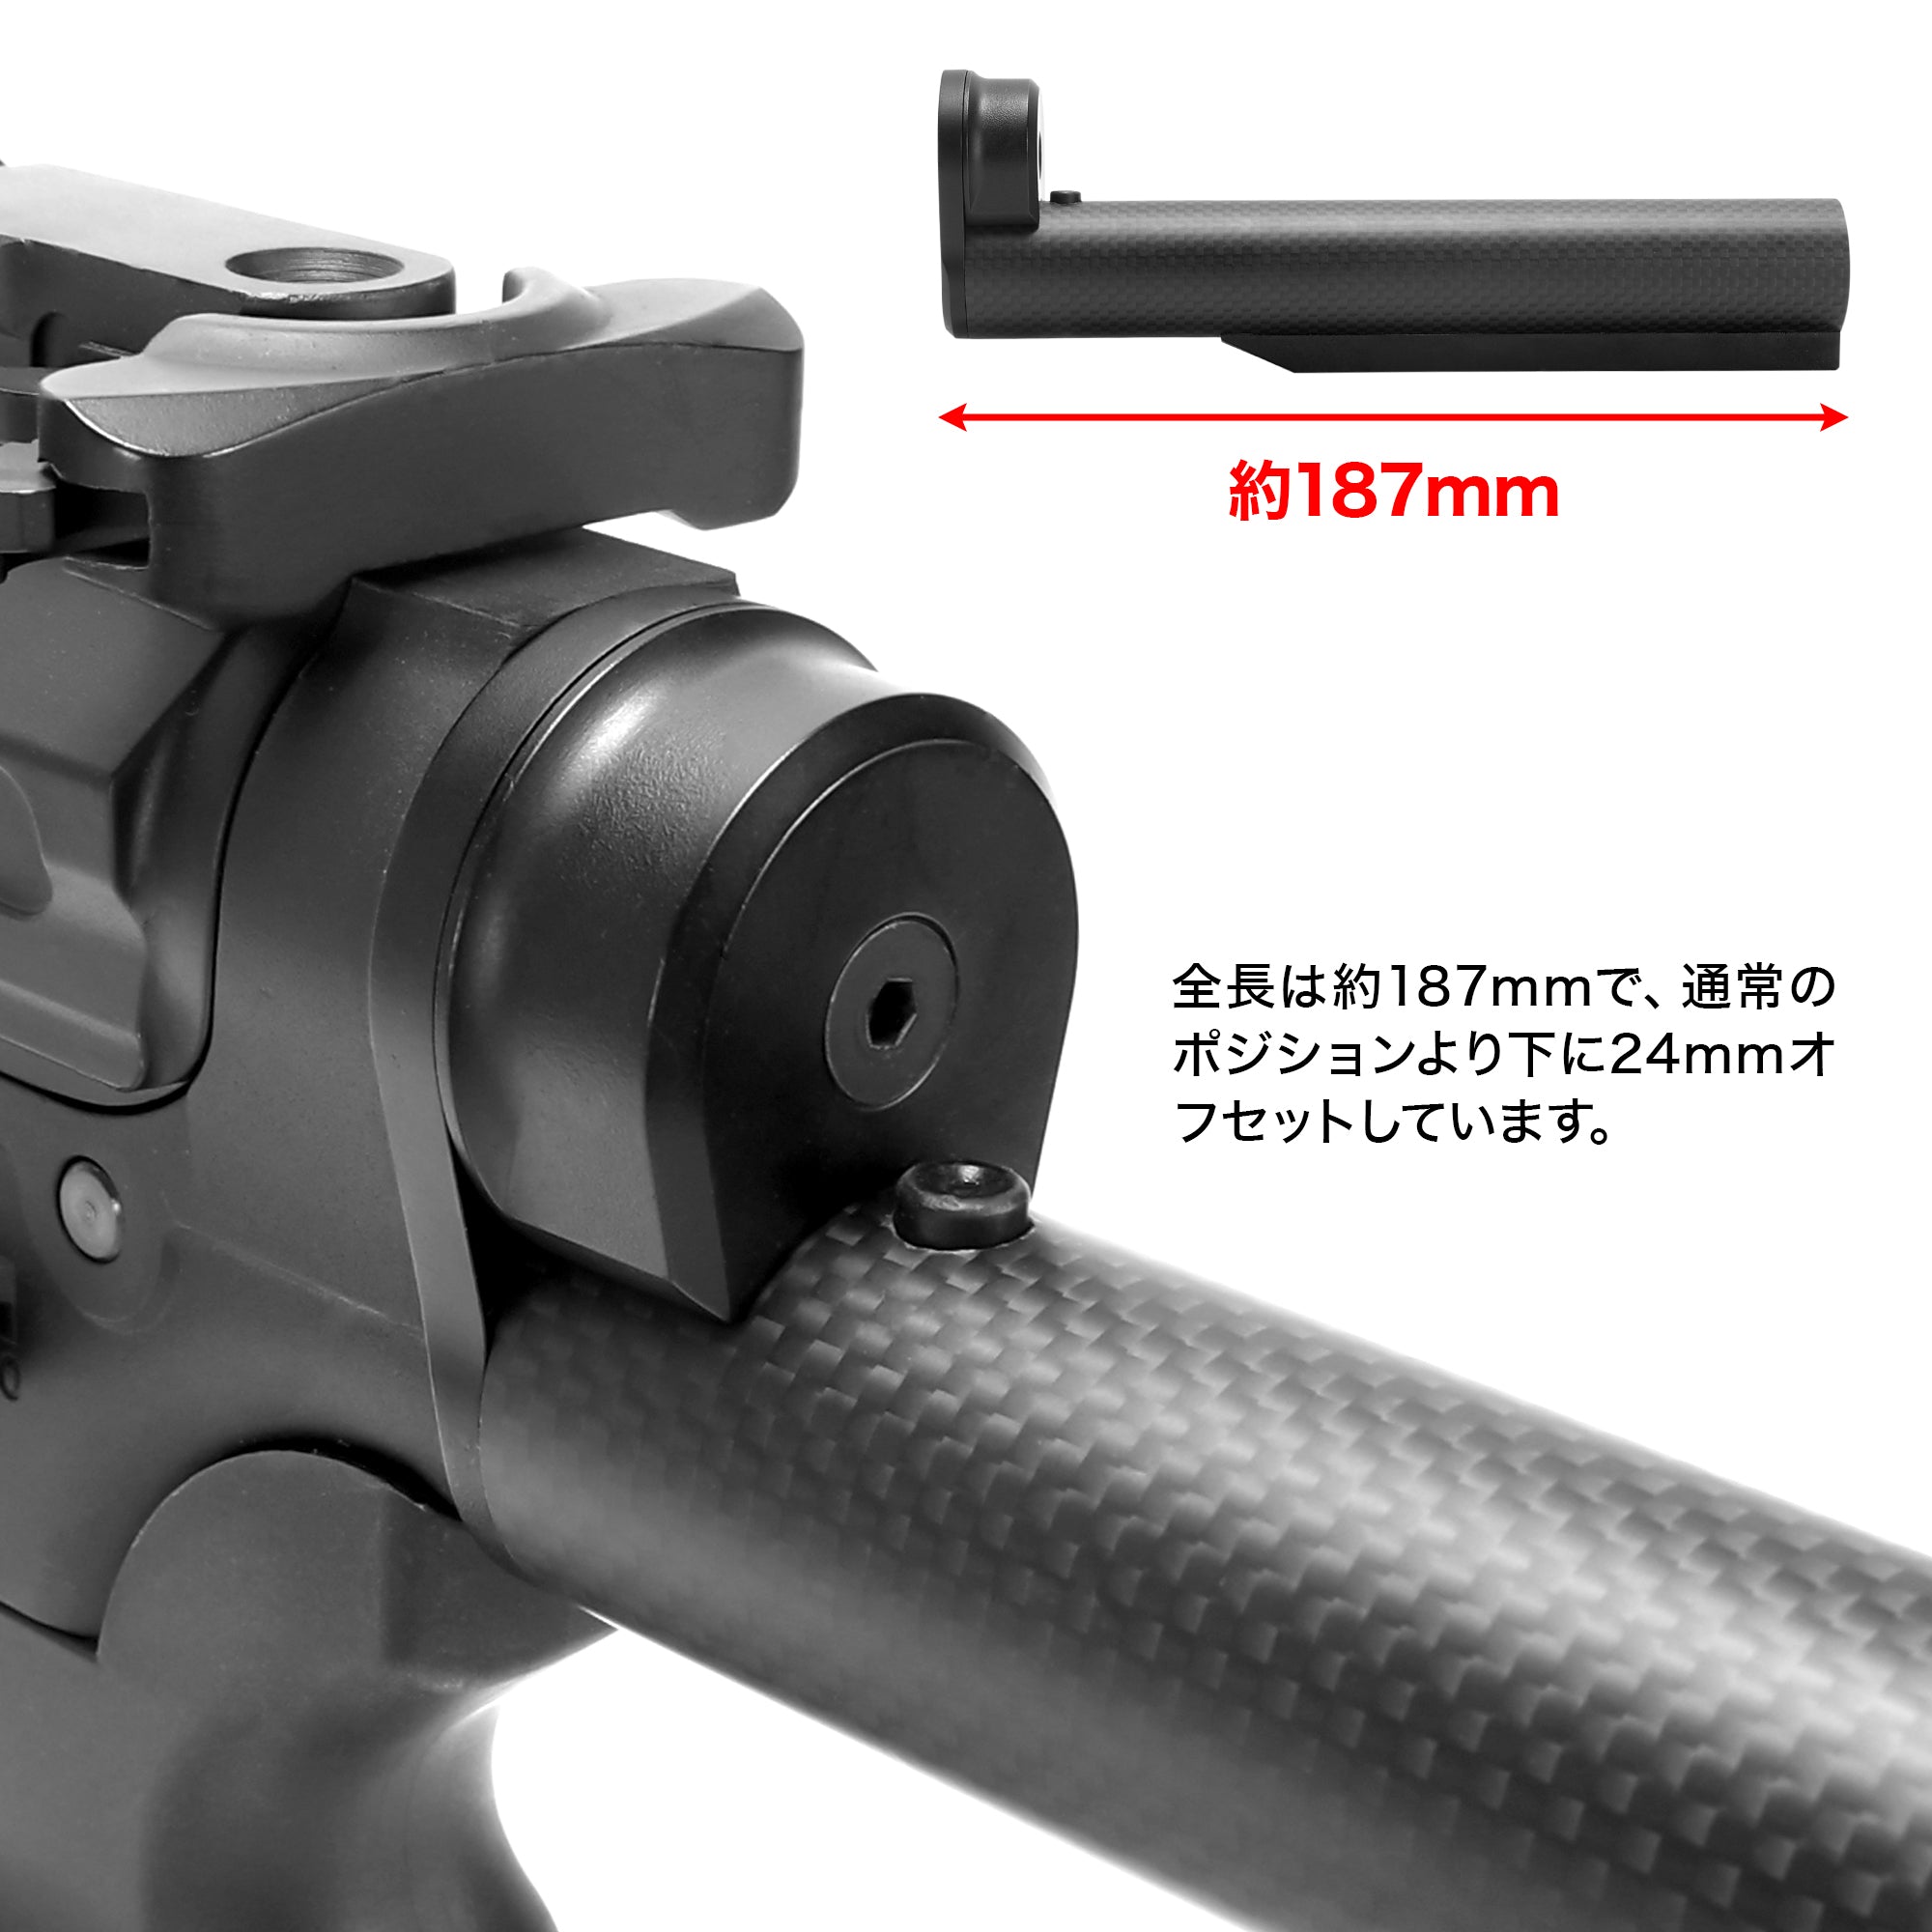 M4オフセットクイックリリースカーボンストックパイプ(東京マルイ電動 